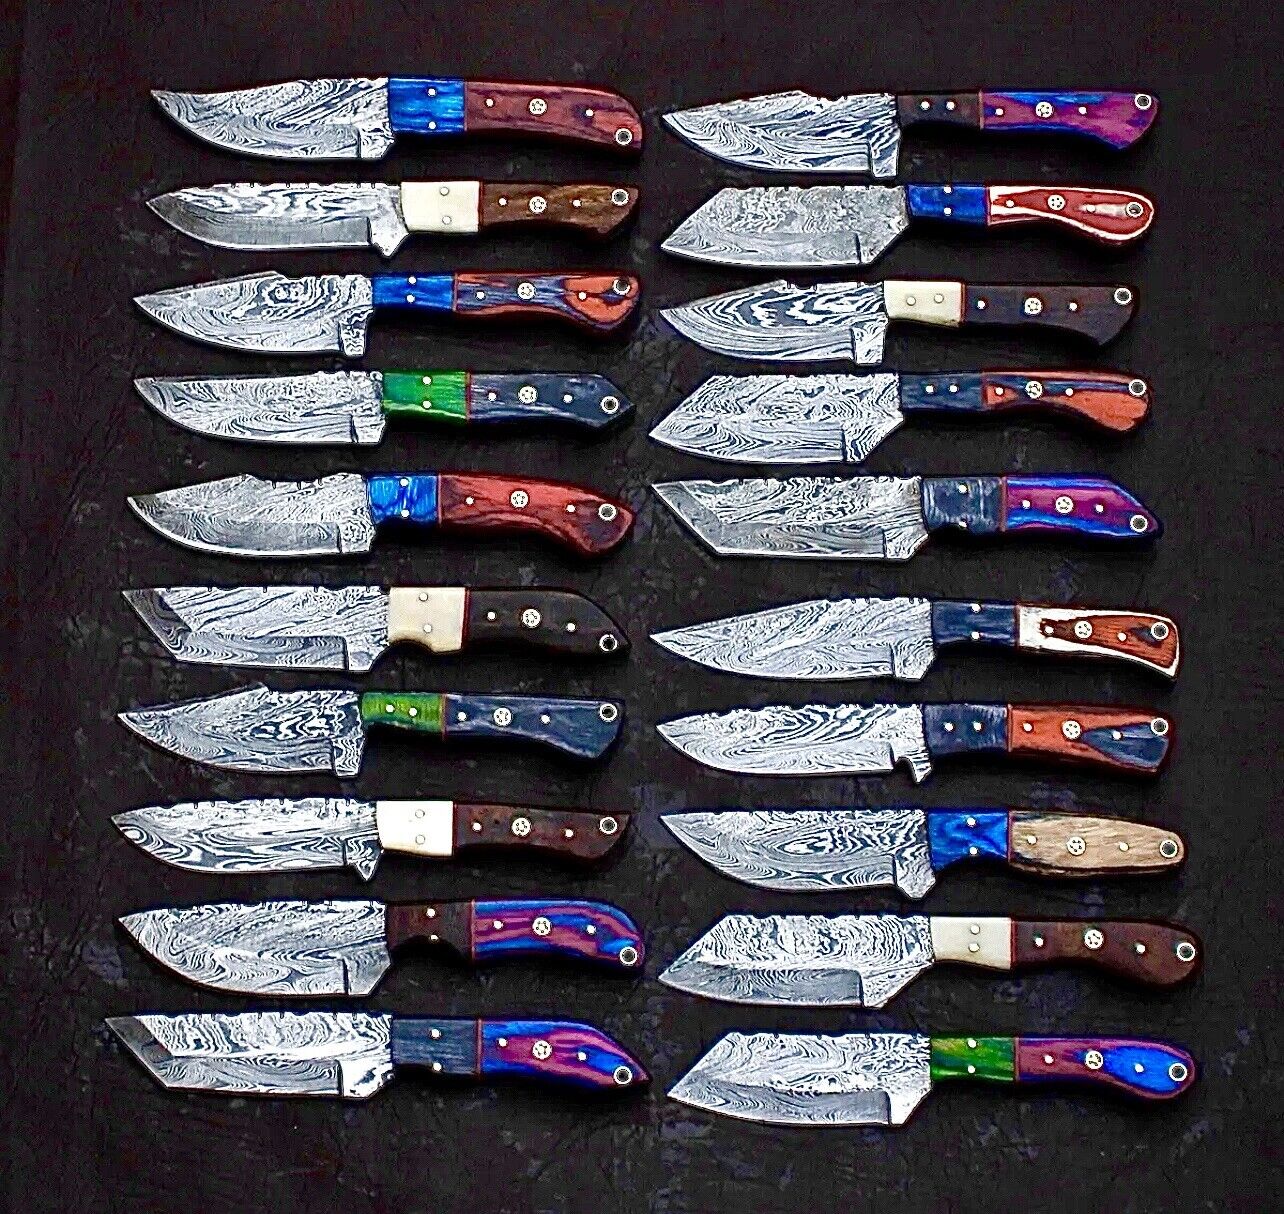 LOT OF 20 EVEREST CUSTOM HANDMADE DAMASCUS STEEL MIX HUNTING EDC SKINNER KNIFE